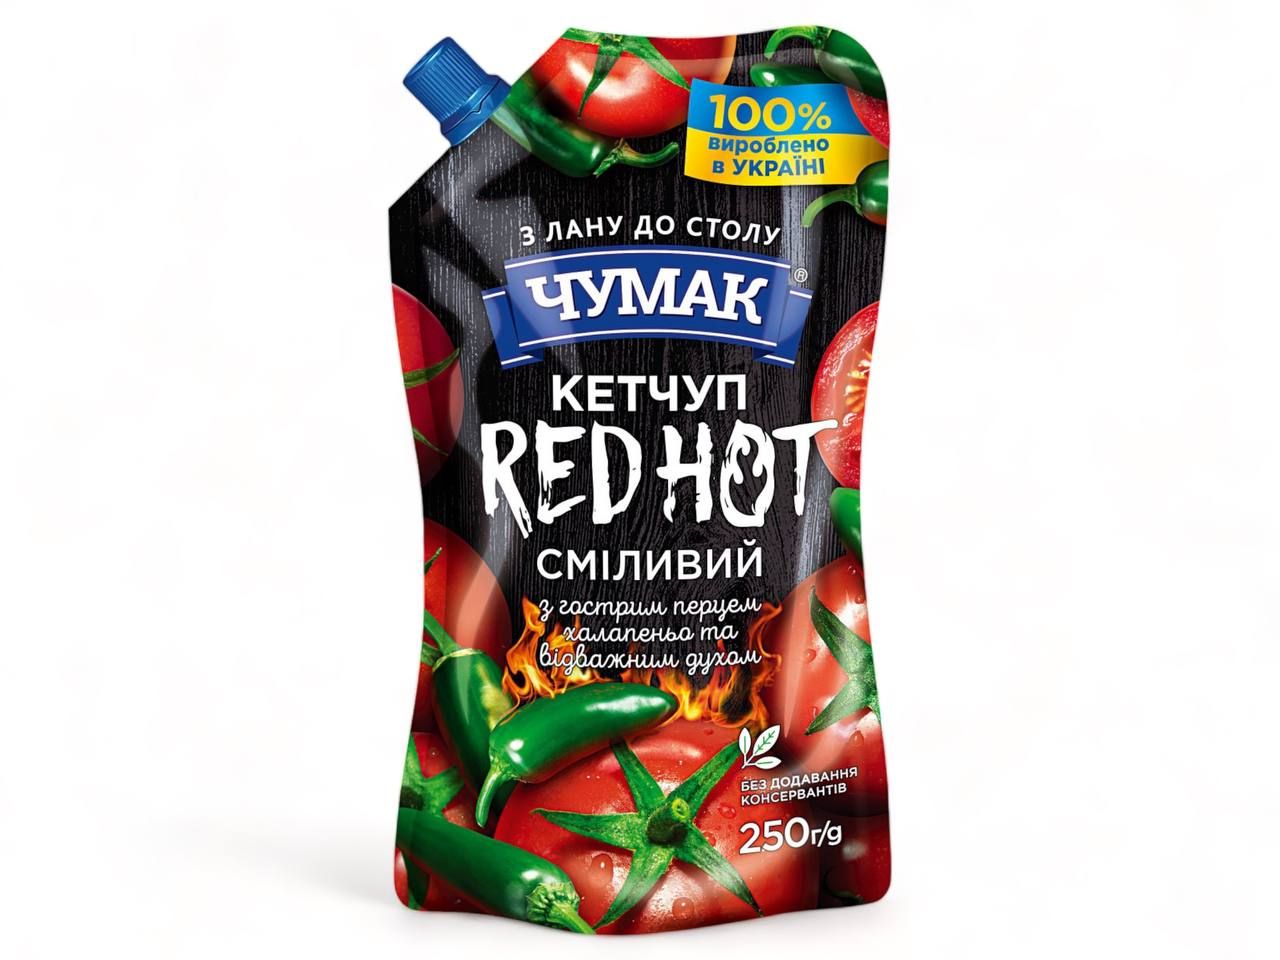 Chumak Ketchup Red Hot (8.8oz) 250g.